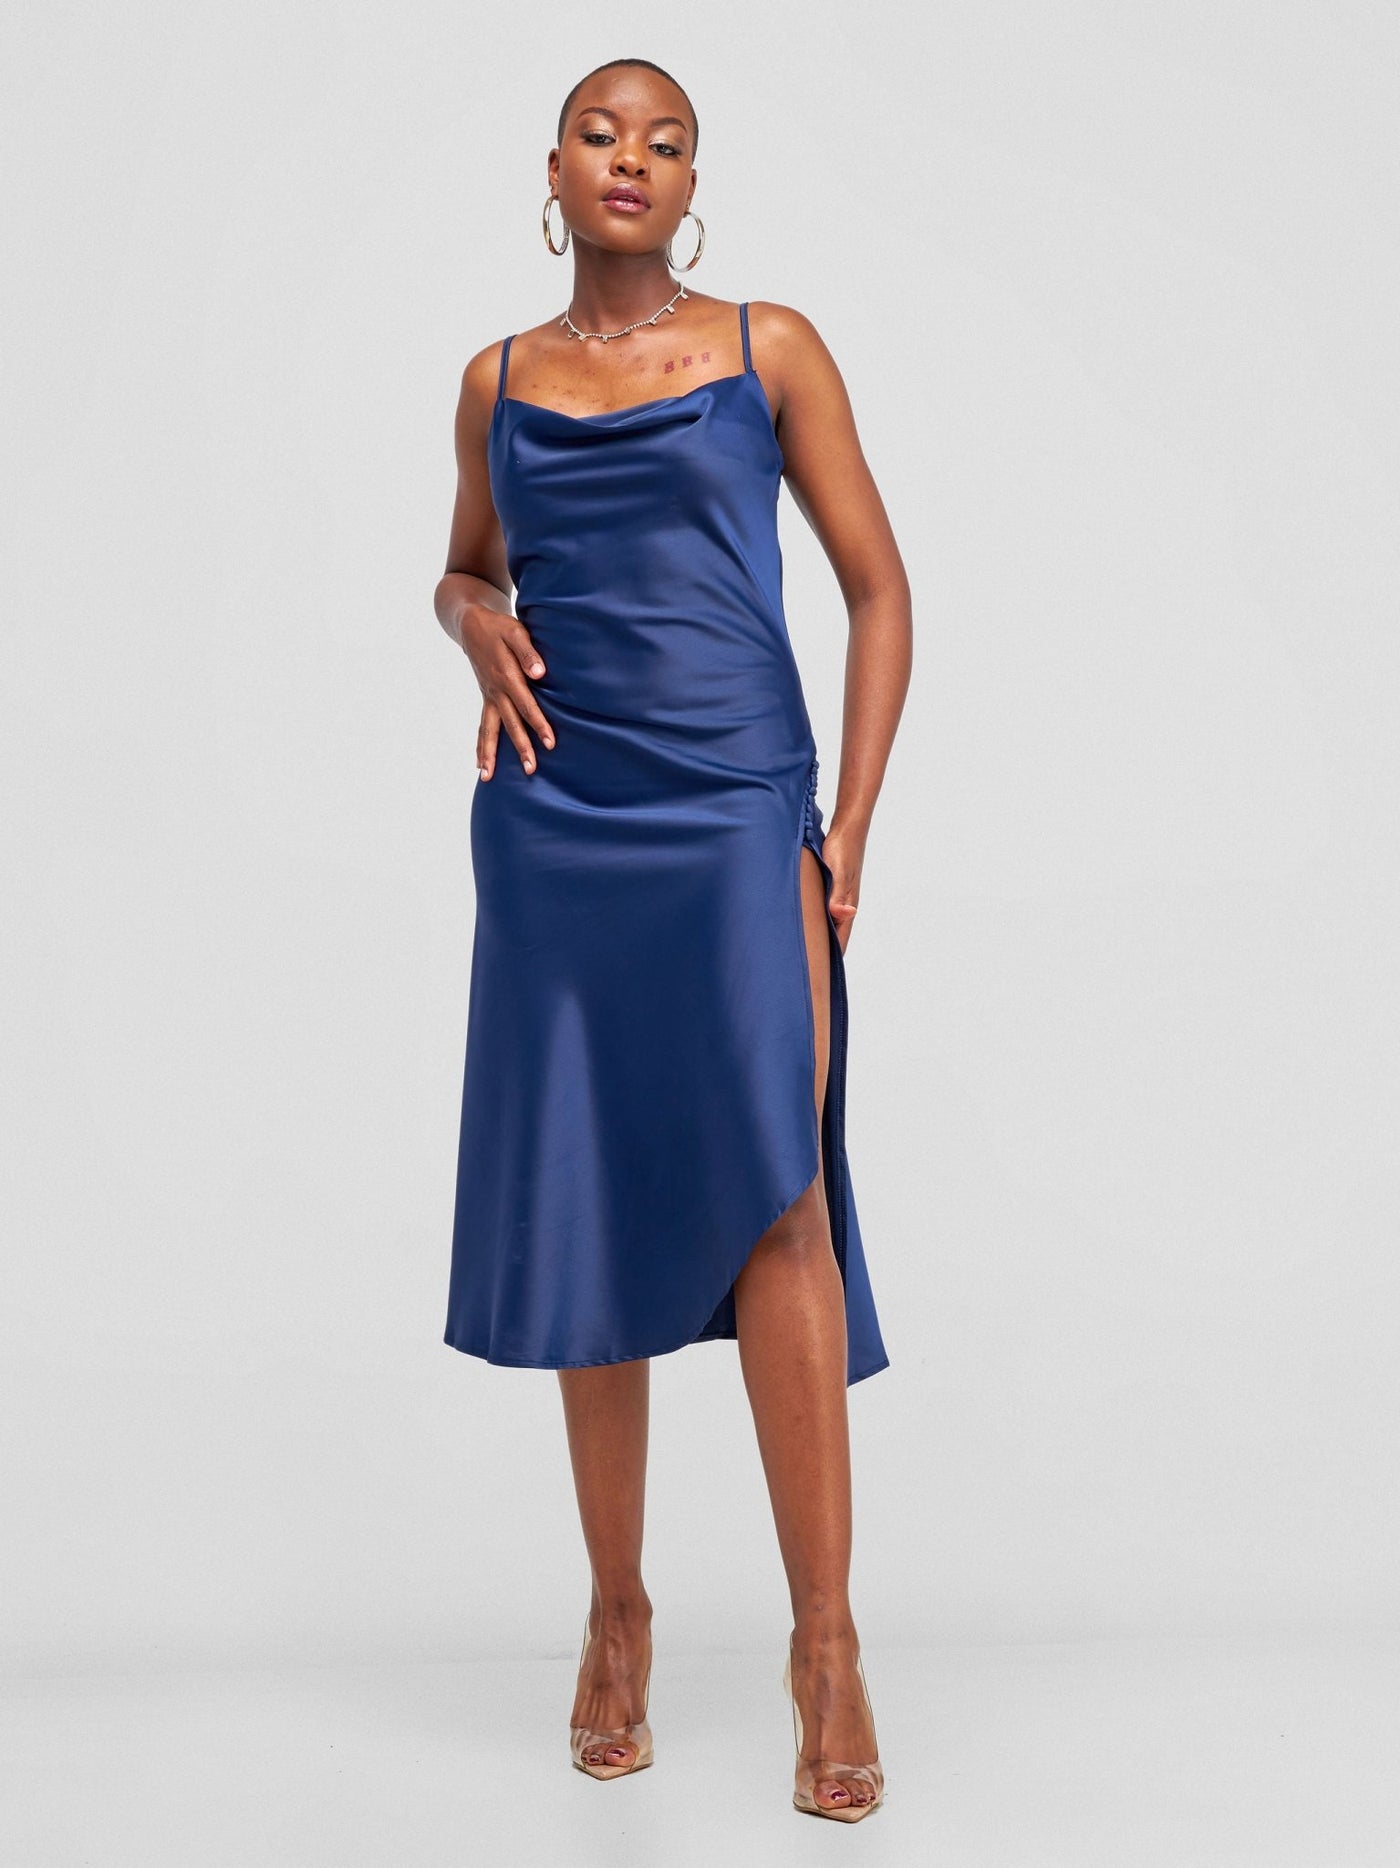 Lola Satin Slip Dress With Side Buttons - Navy Blue - Shopzetu